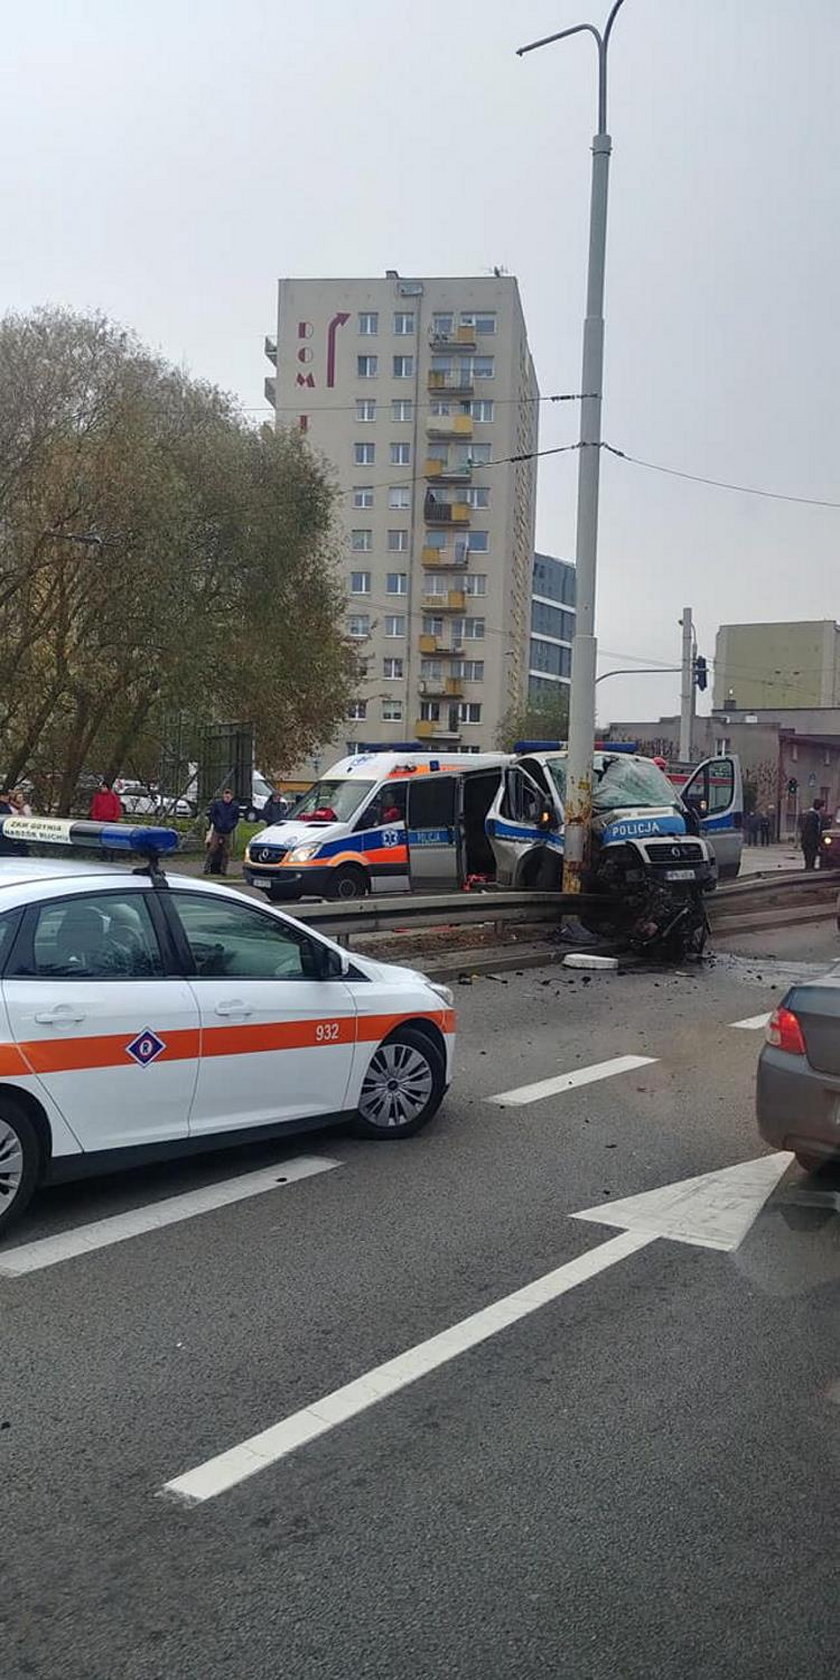 25-letni policjant walczy o życie po wypadku w Gdyni. Prokuratura wszczęła śledztwo